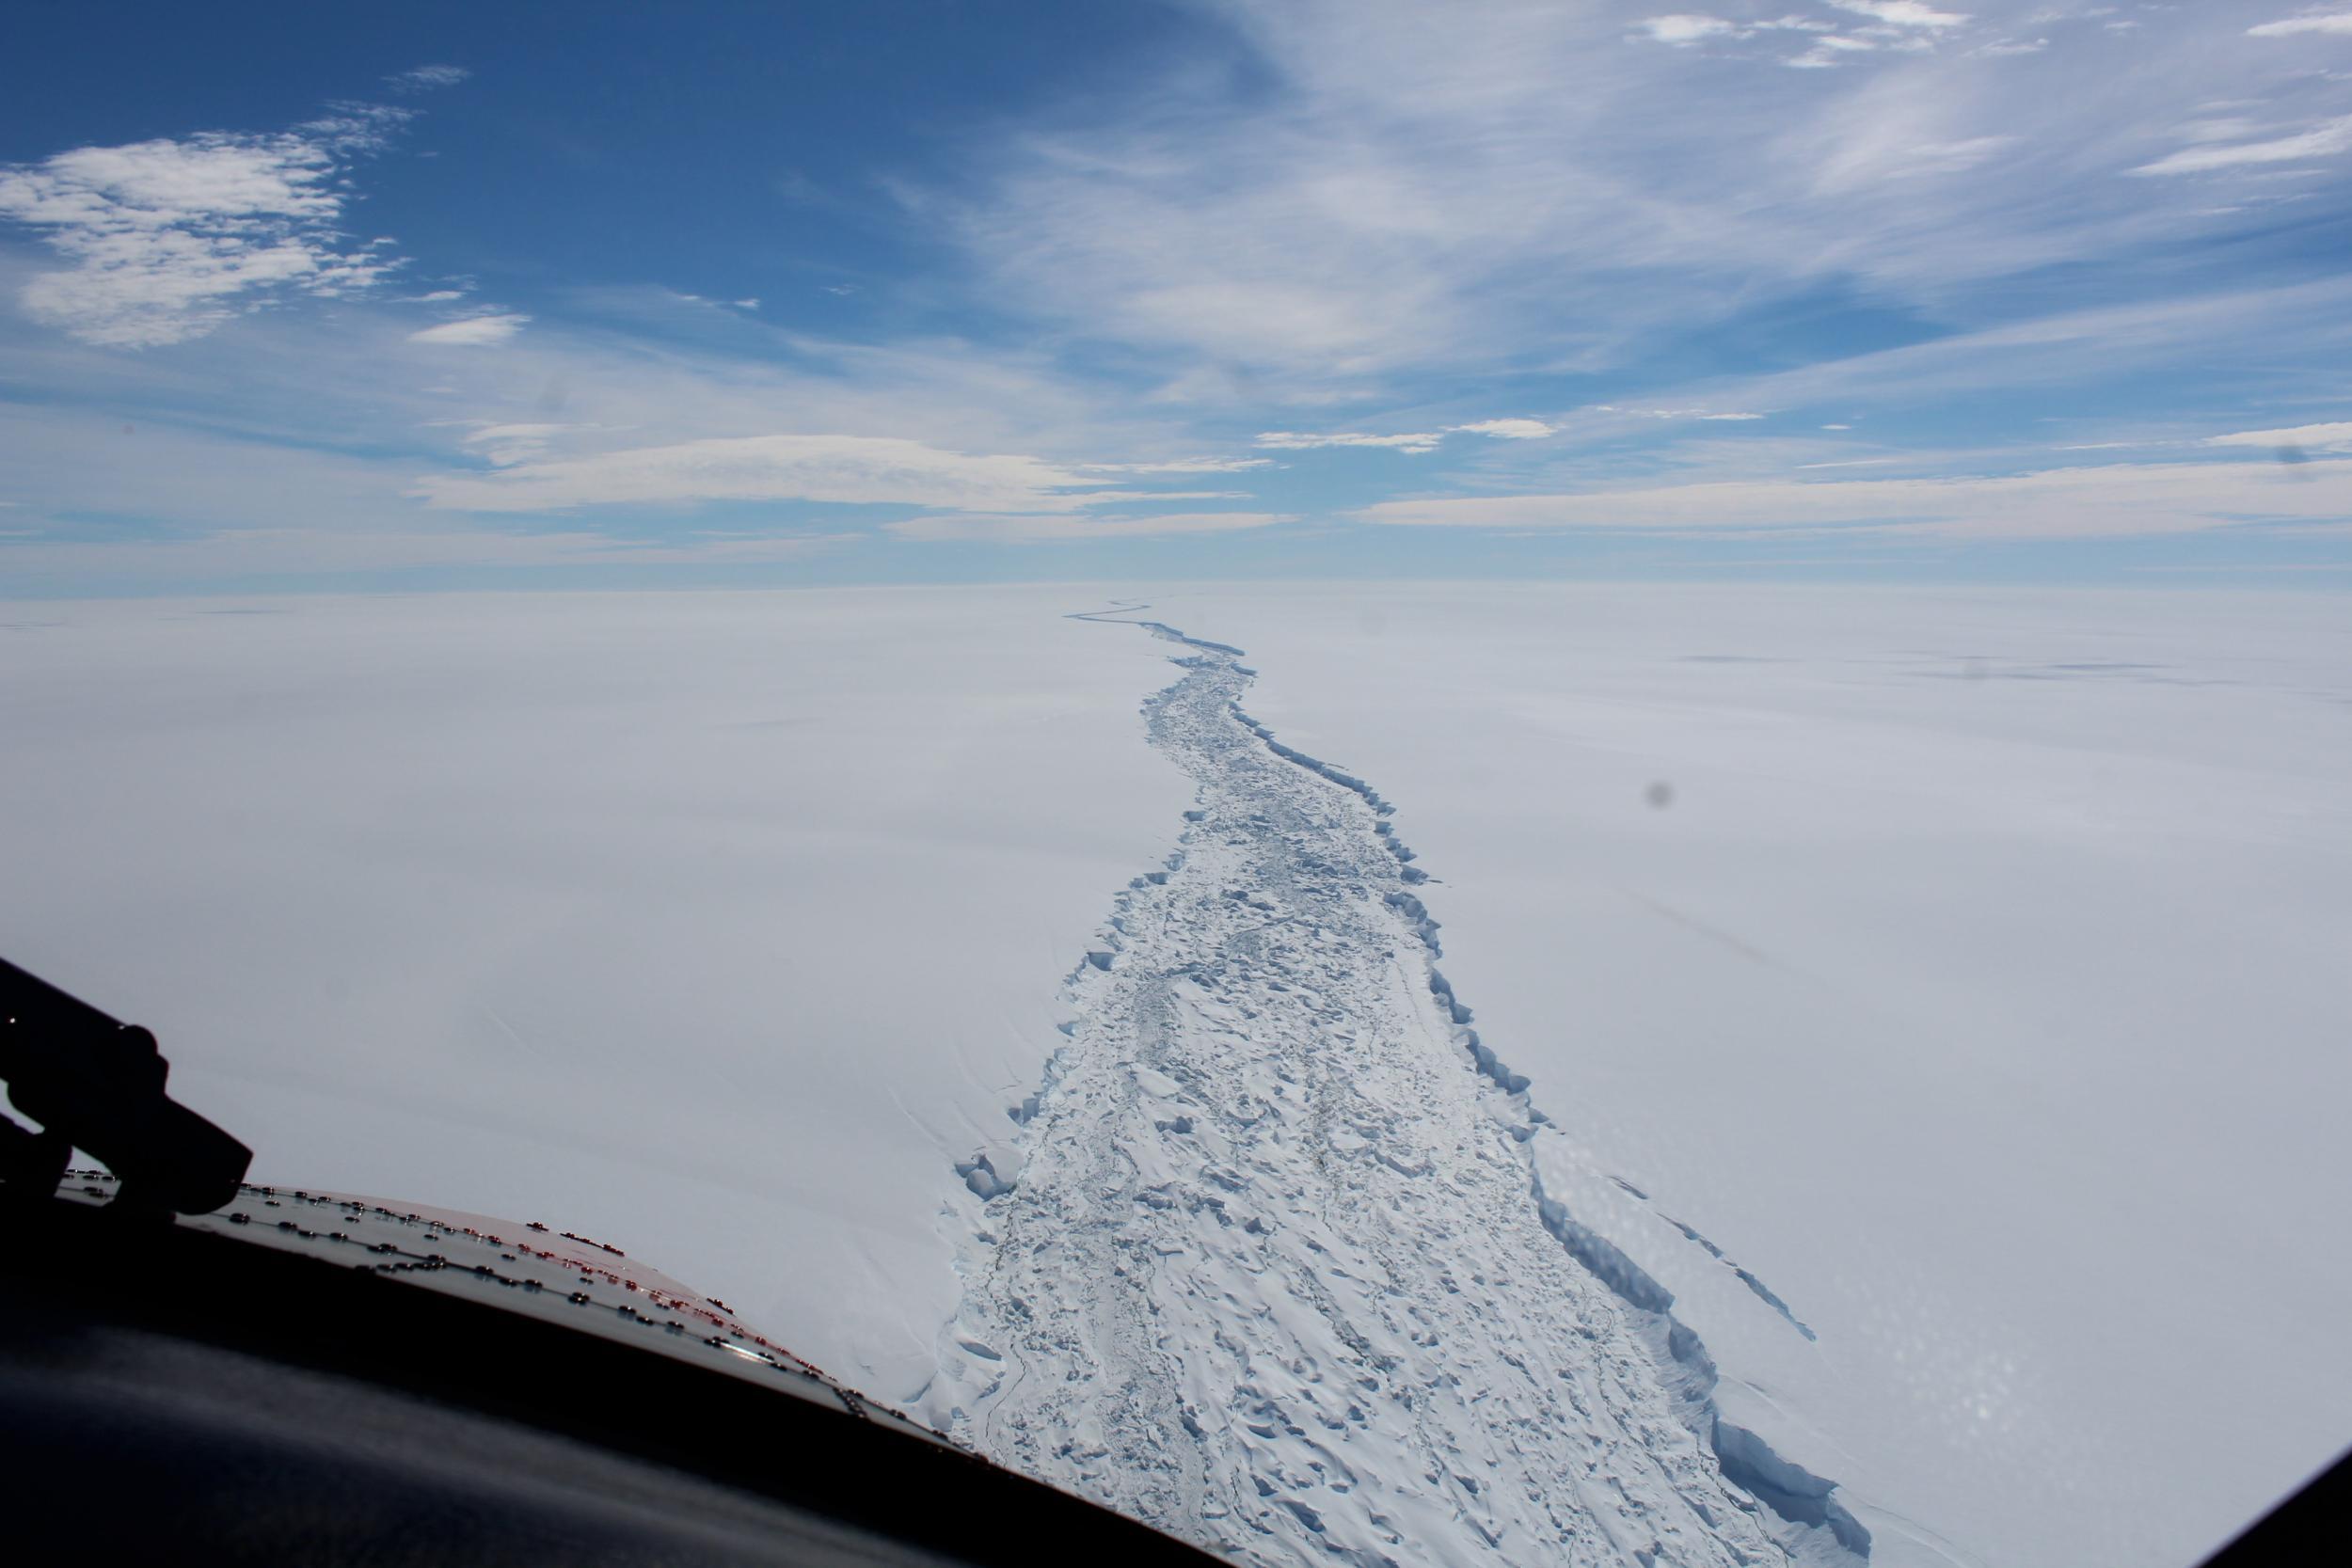 antarctic ice shelf breaking off